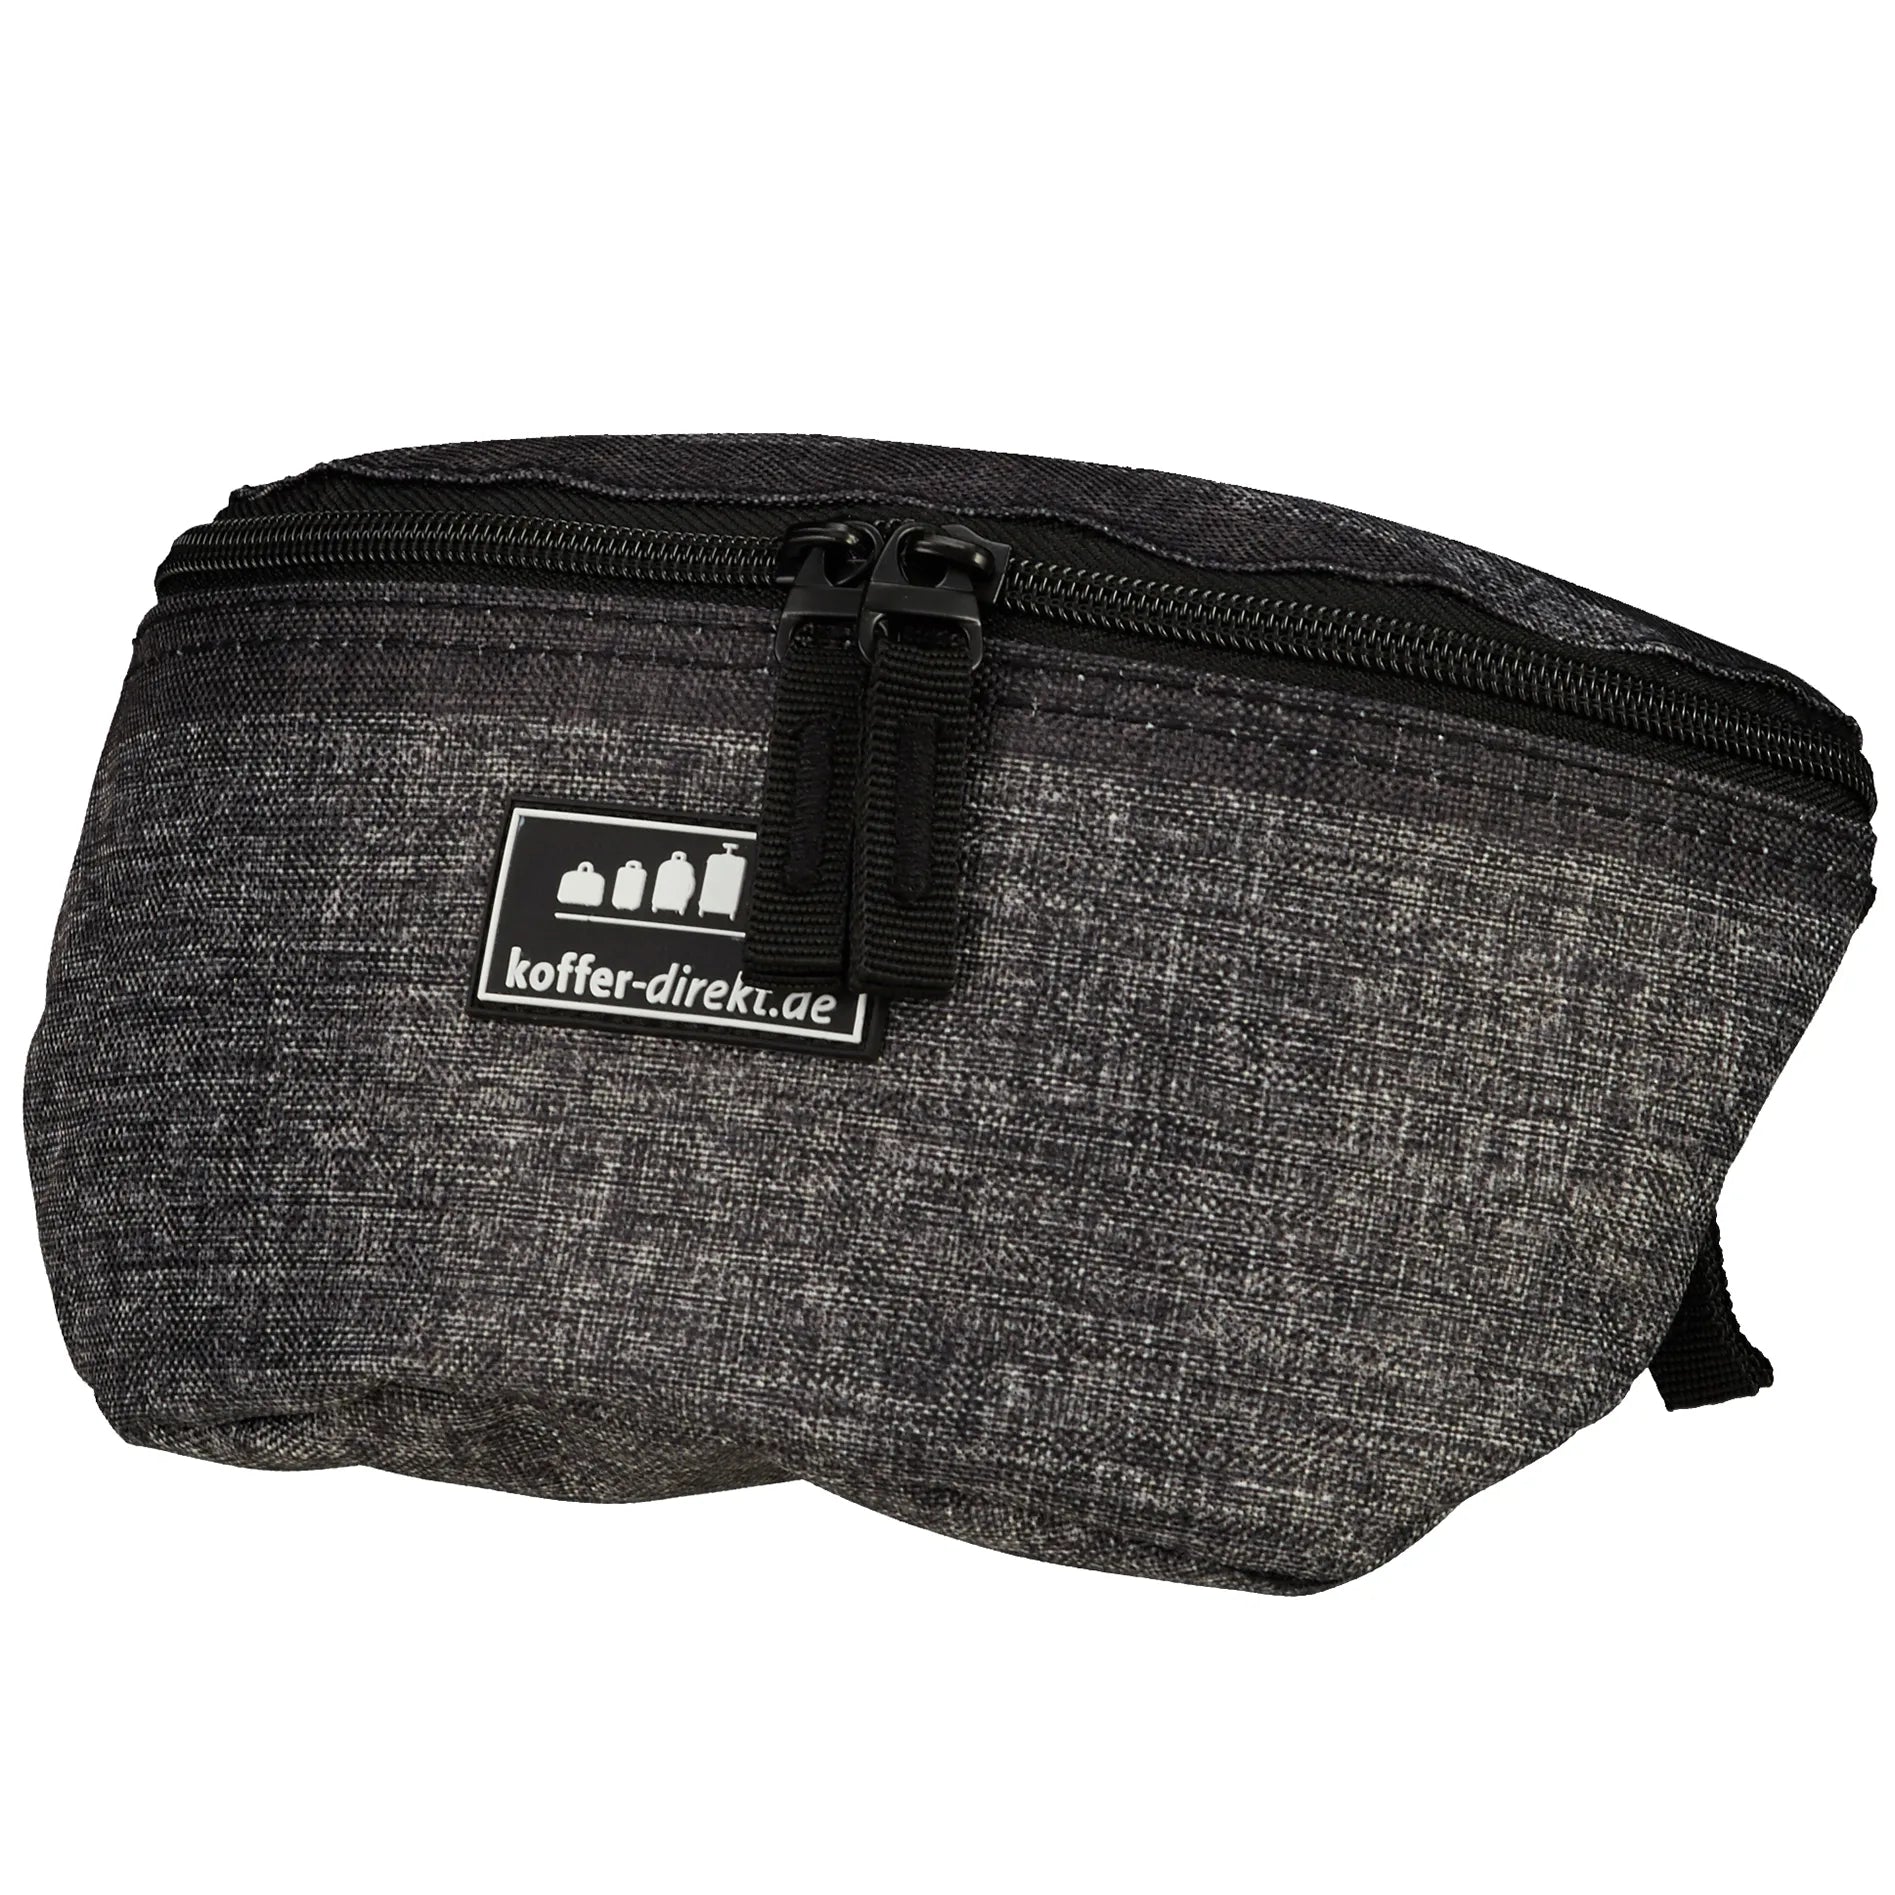 koffer-direkt.de Two Travel II belt bag 23 cm - gray stripe